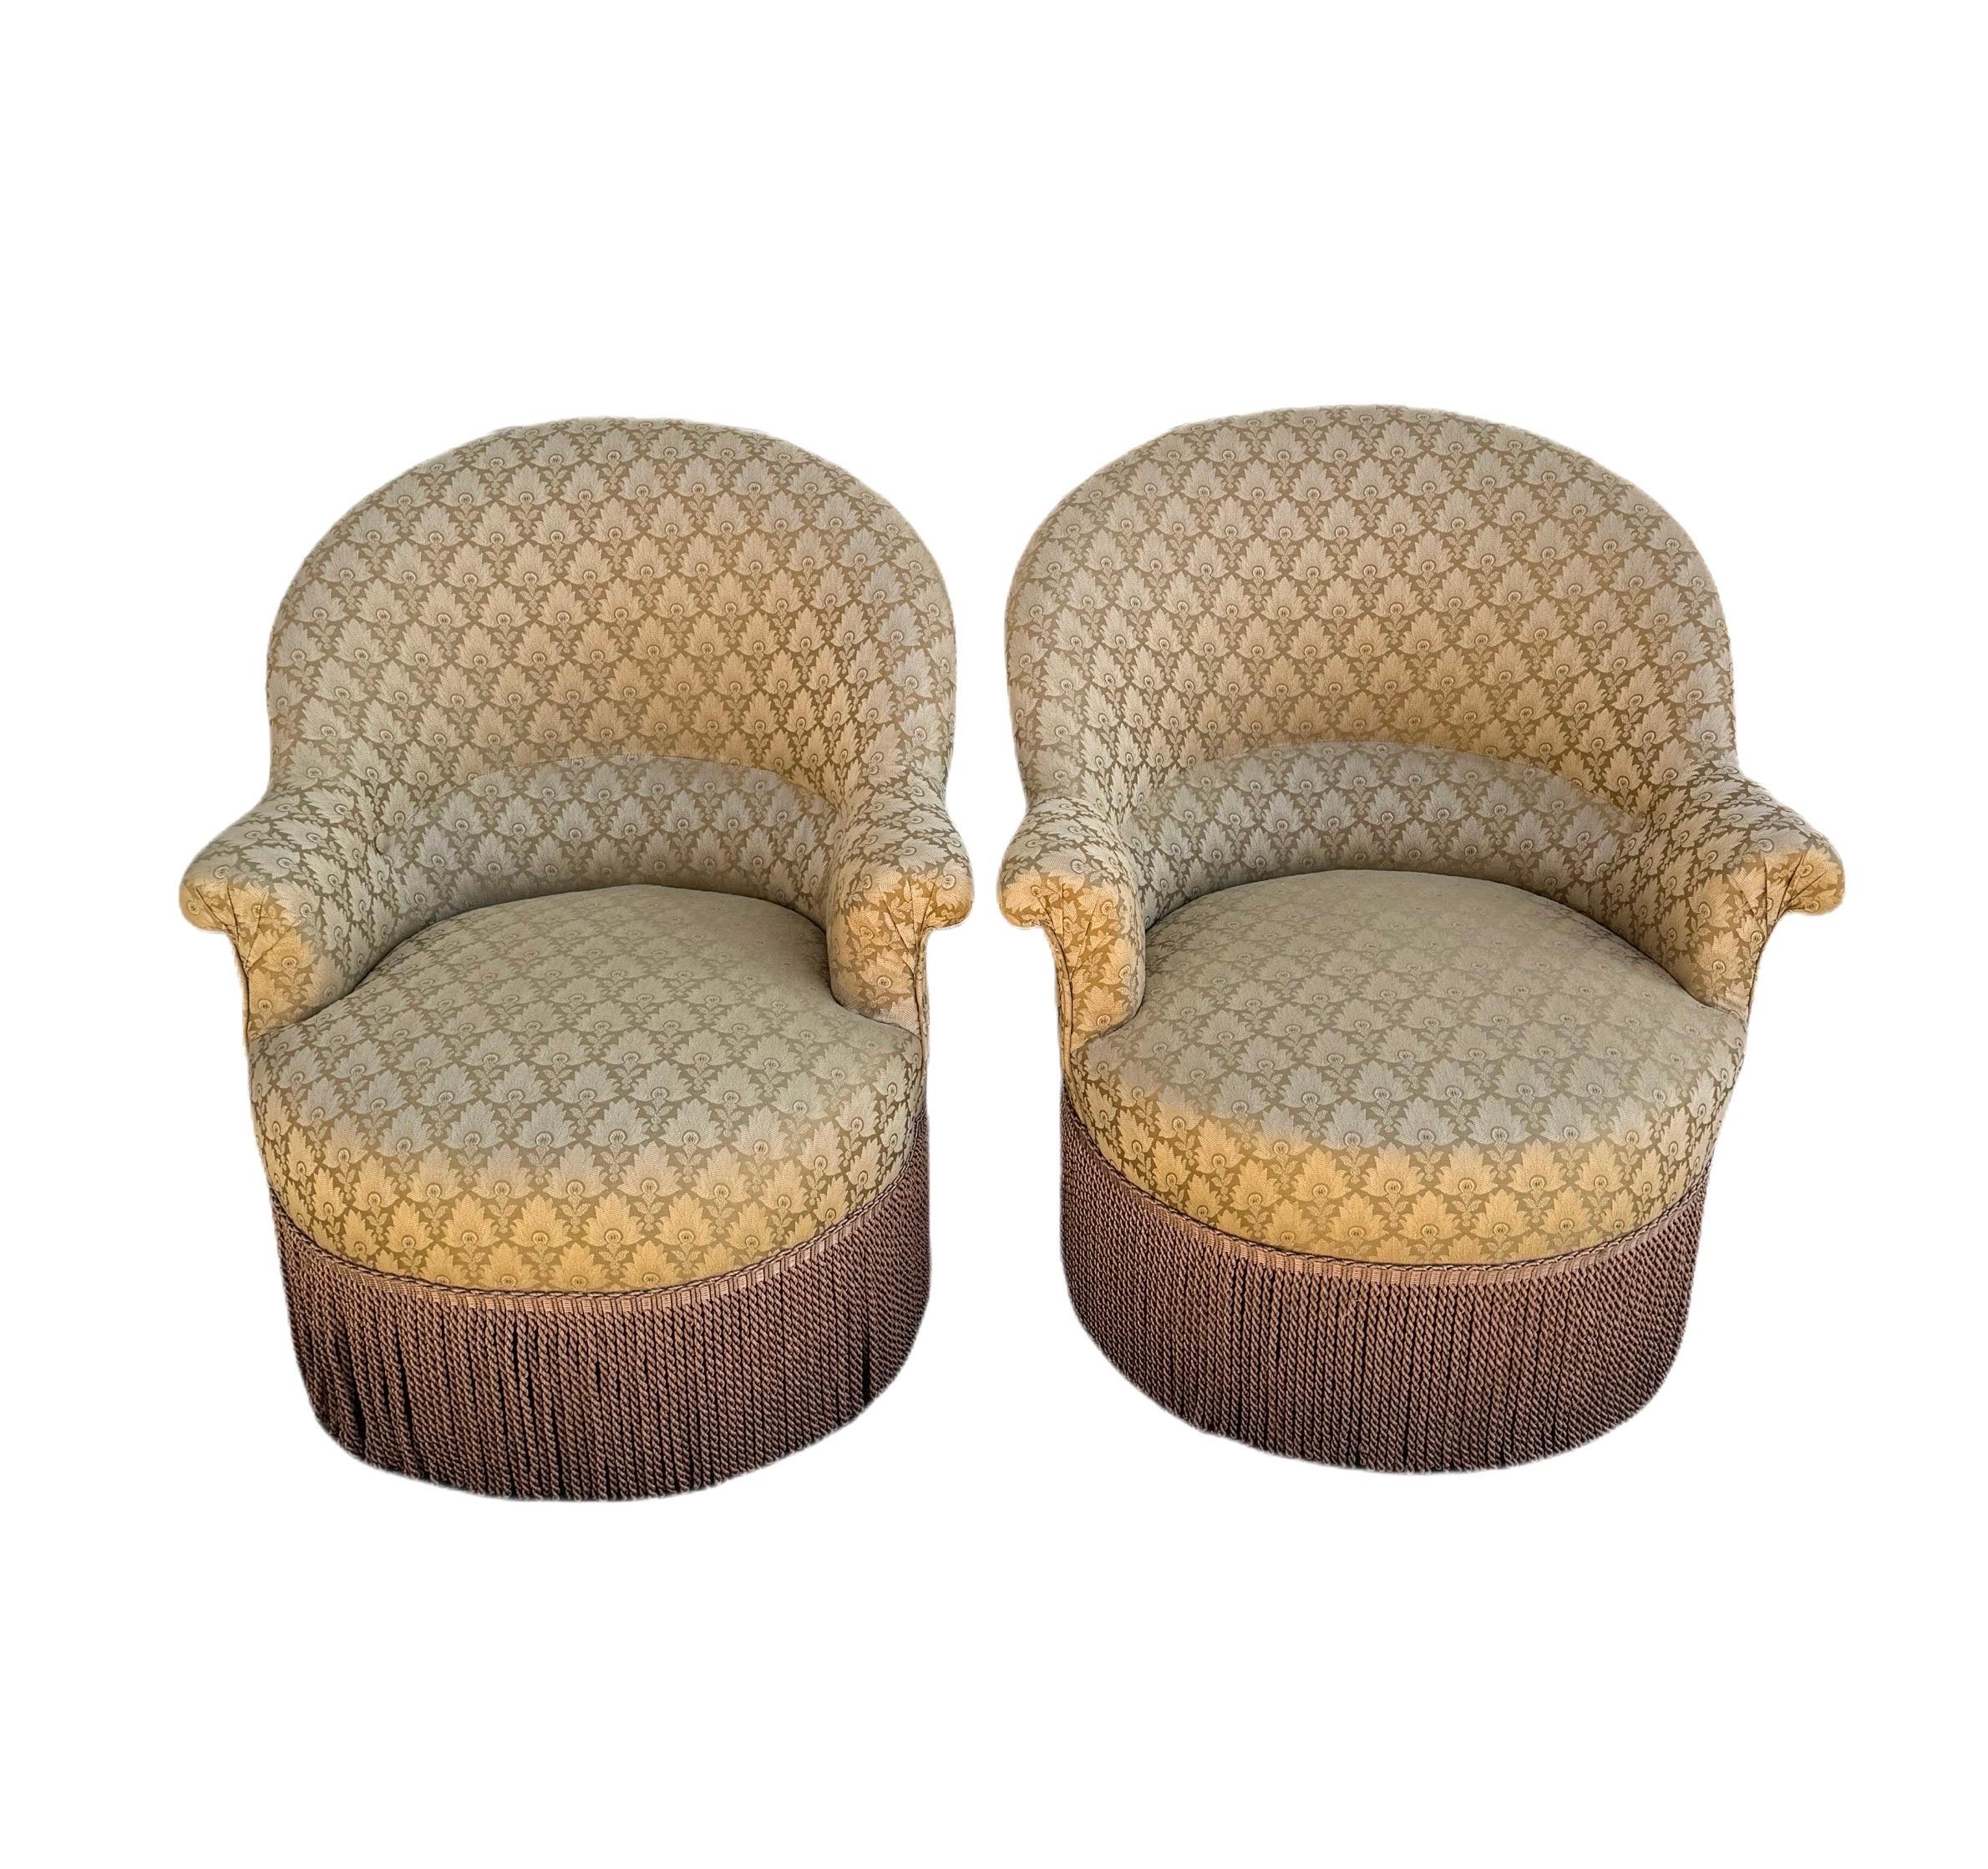 Superbe paire de chaises vintage de style Art of Vintage, magnifiquement tapissées d'un luxueux tissu damassé en soie à panache d'or. Ces chaises présentent une silhouette élégante avec un dossier incurvé et une assise arrondie et moelleuse qui